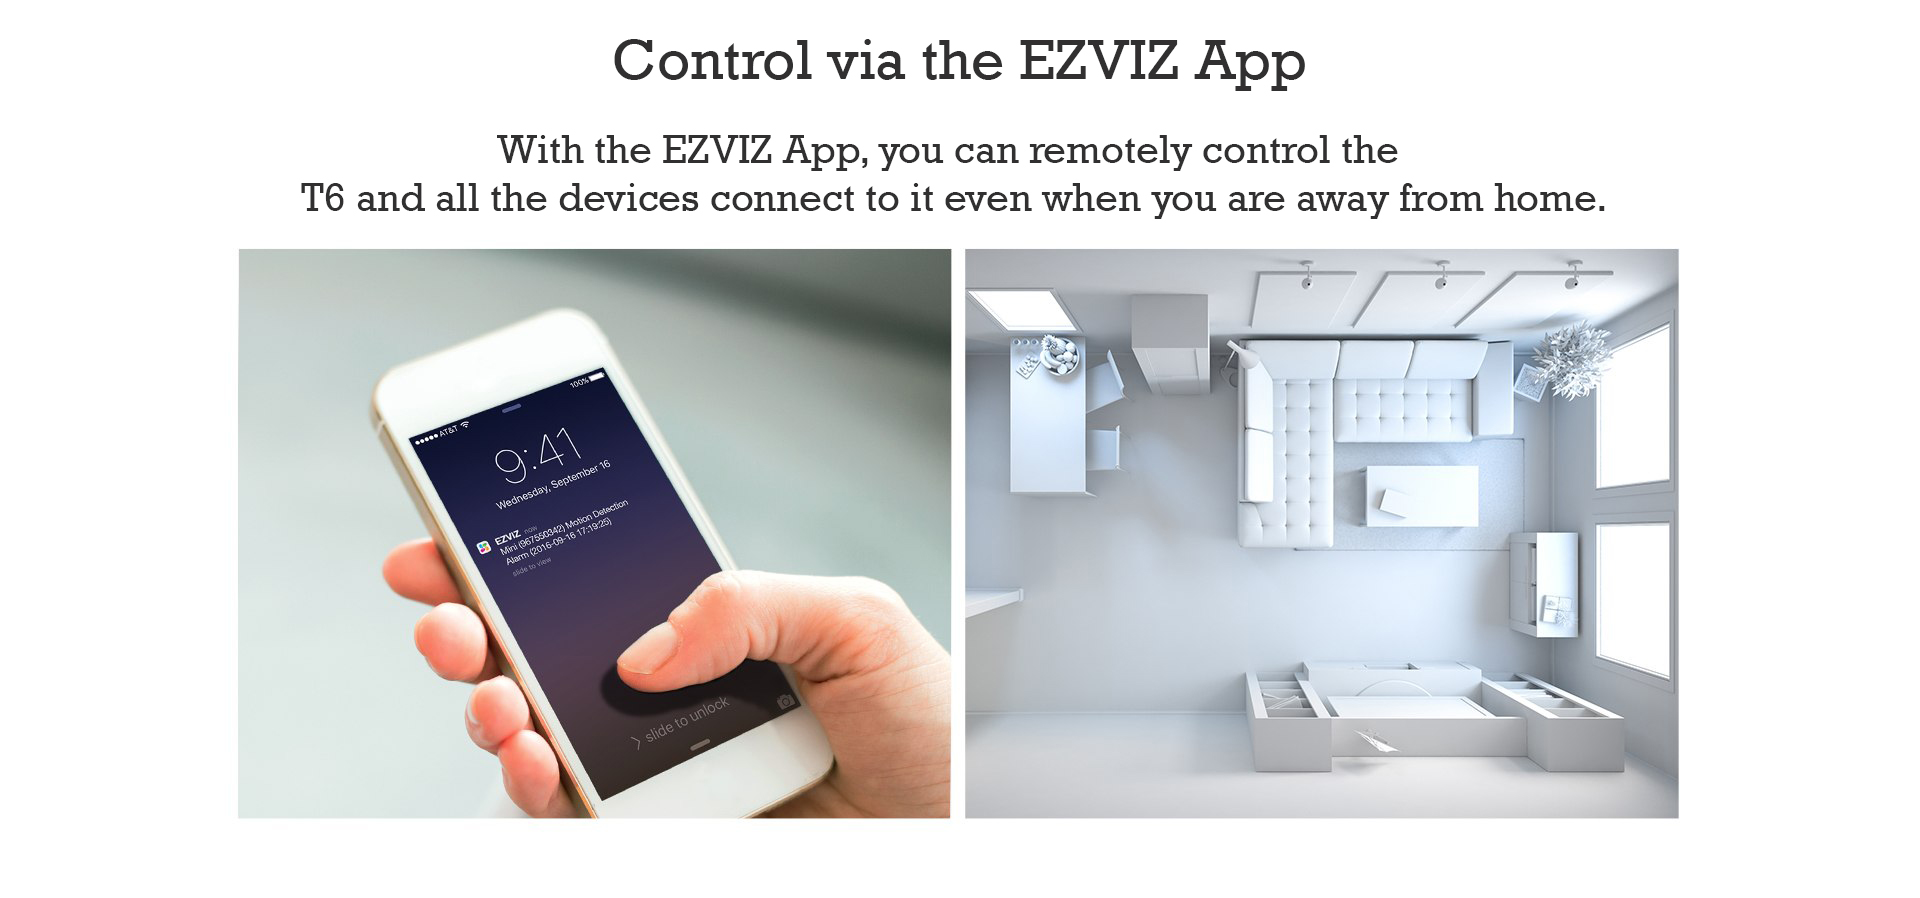 Control via the EZVIZ App